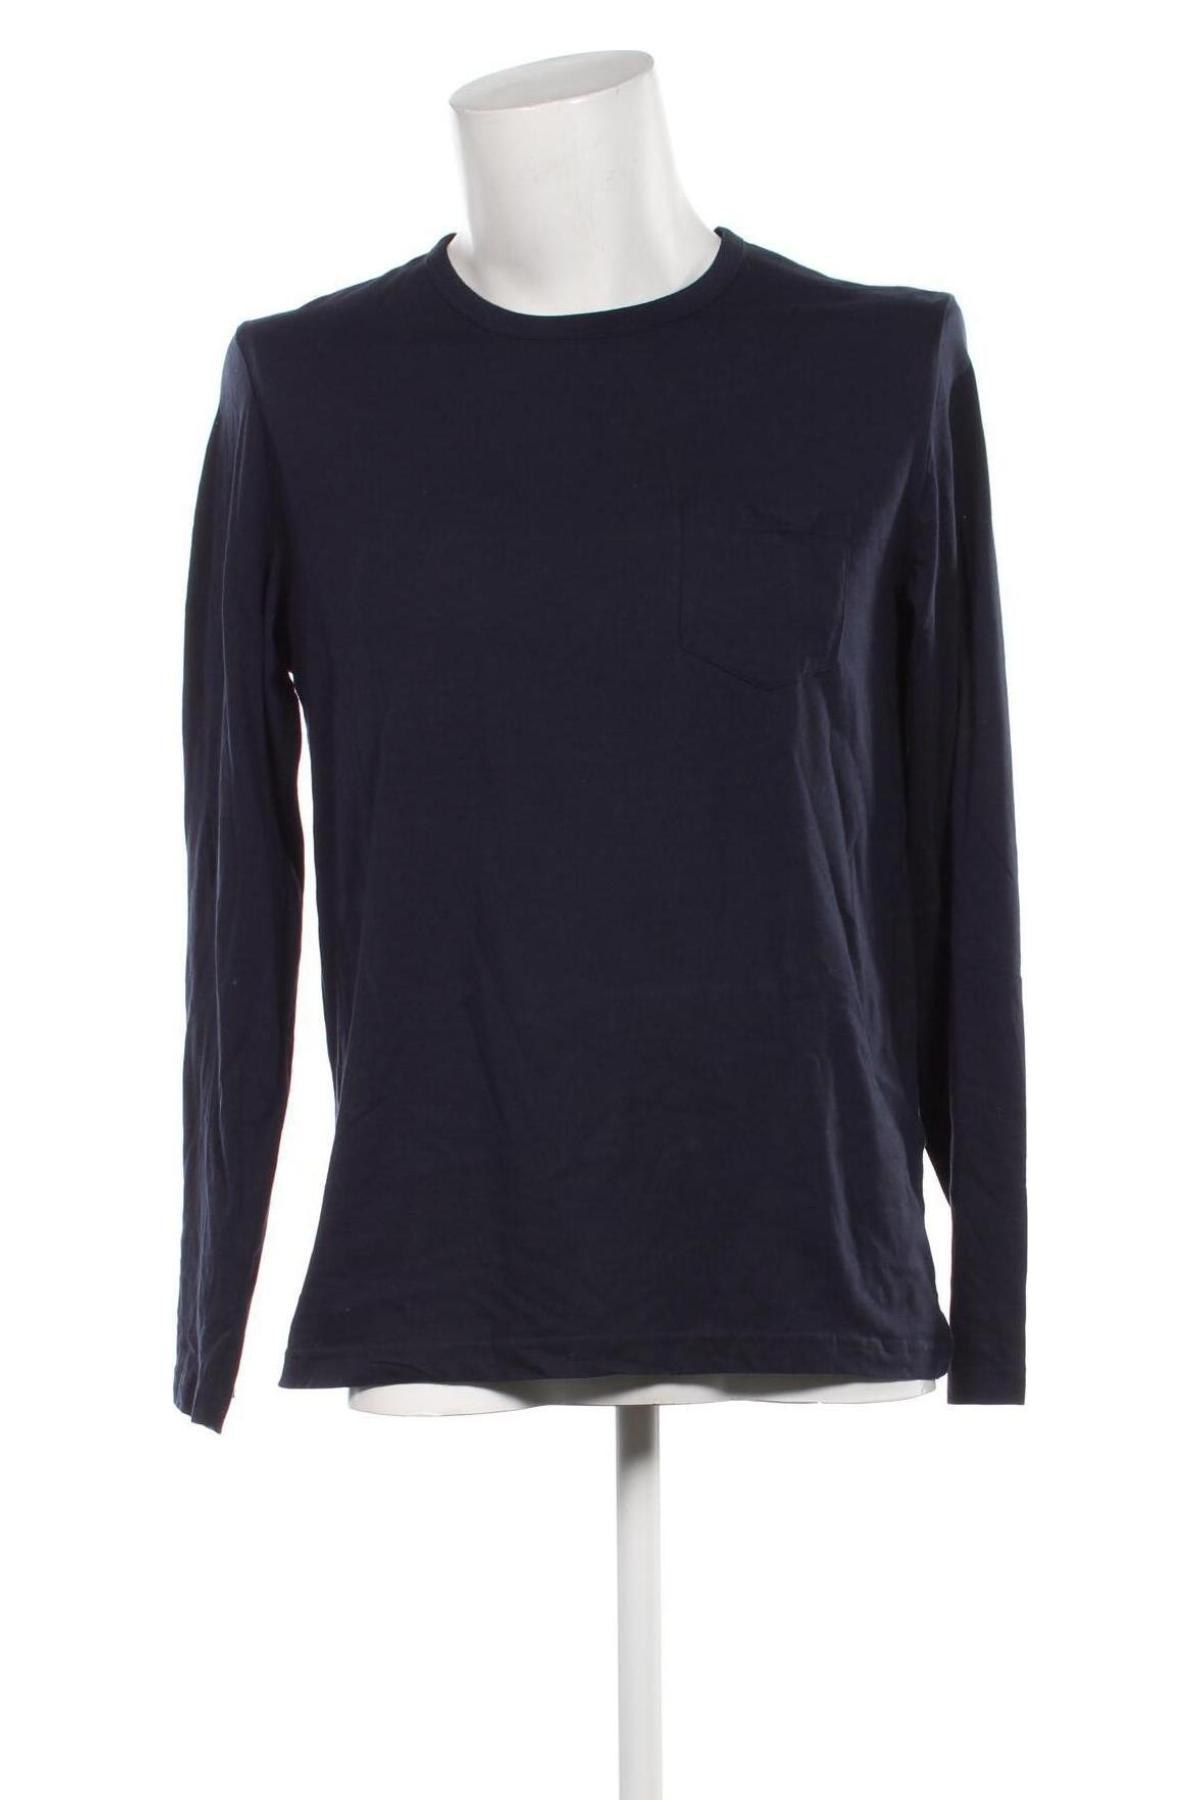 Ανδρική μπλούζα Livergy, Μέγεθος M, Χρώμα Μπλέ, Τιμή 5,99 €